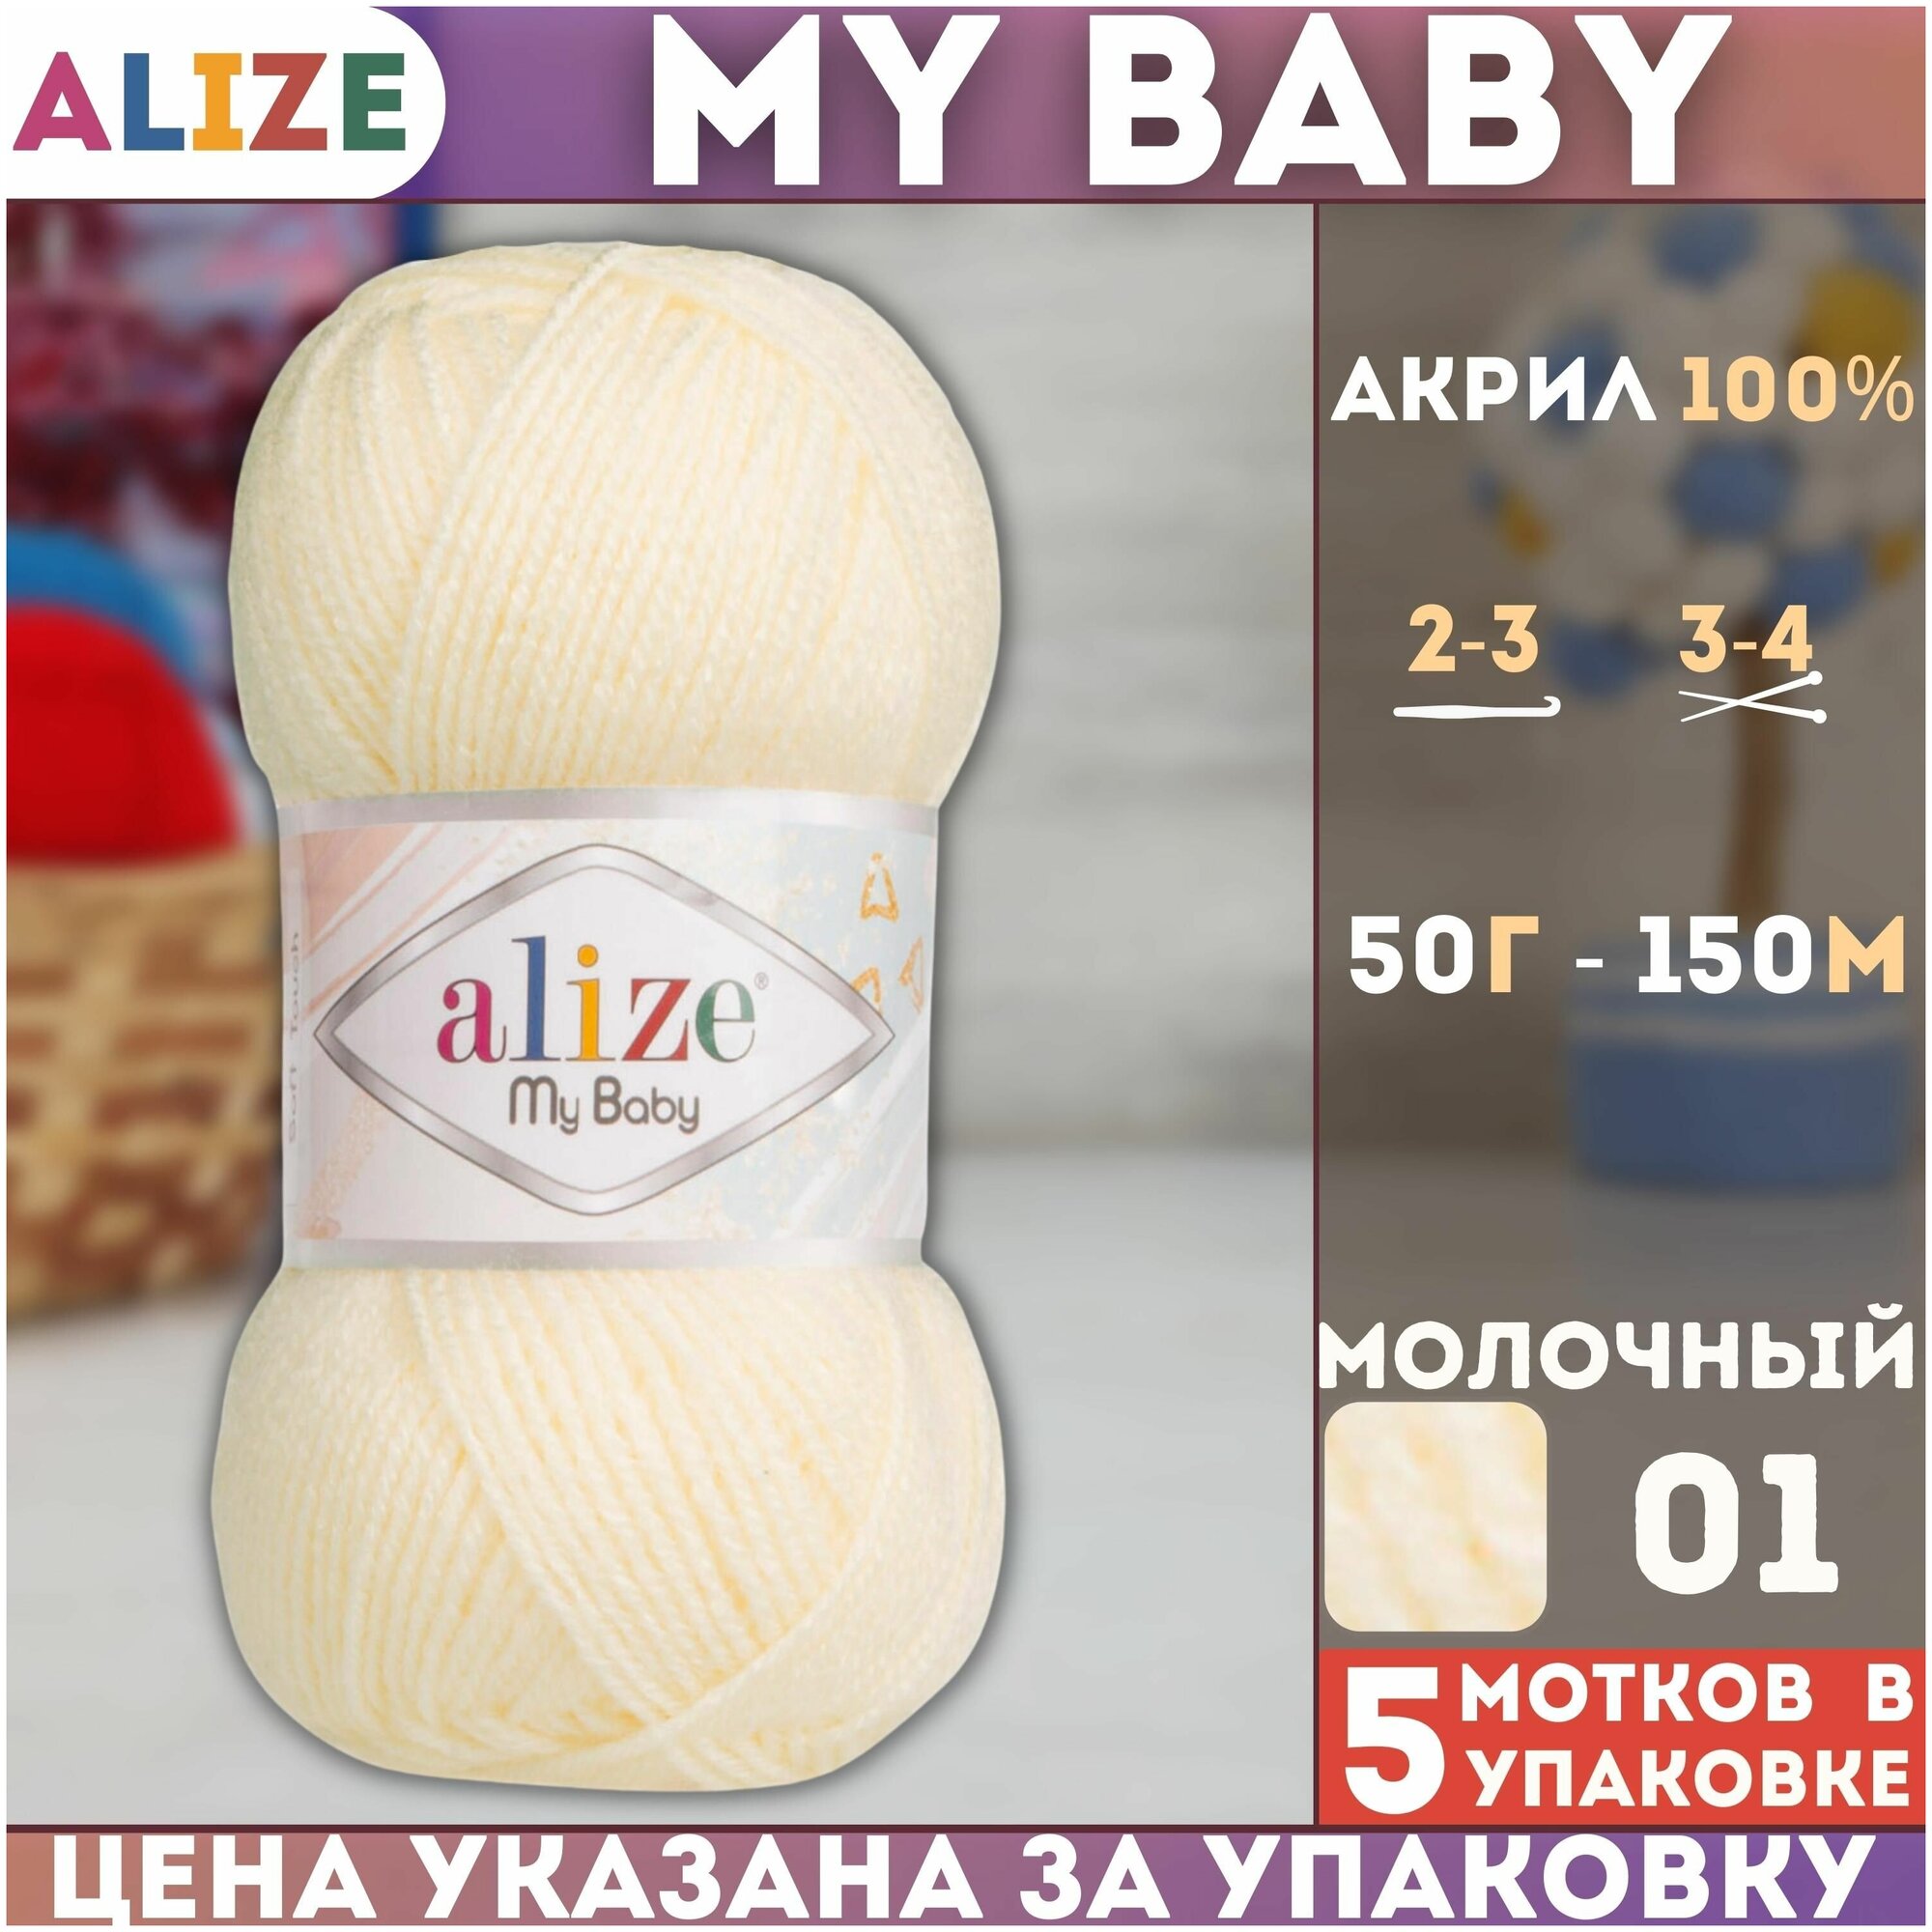 Пряжа MY BABY (Alize), молочный - 01, 100% акрил, 5 мотков, 50 г, 150 м.